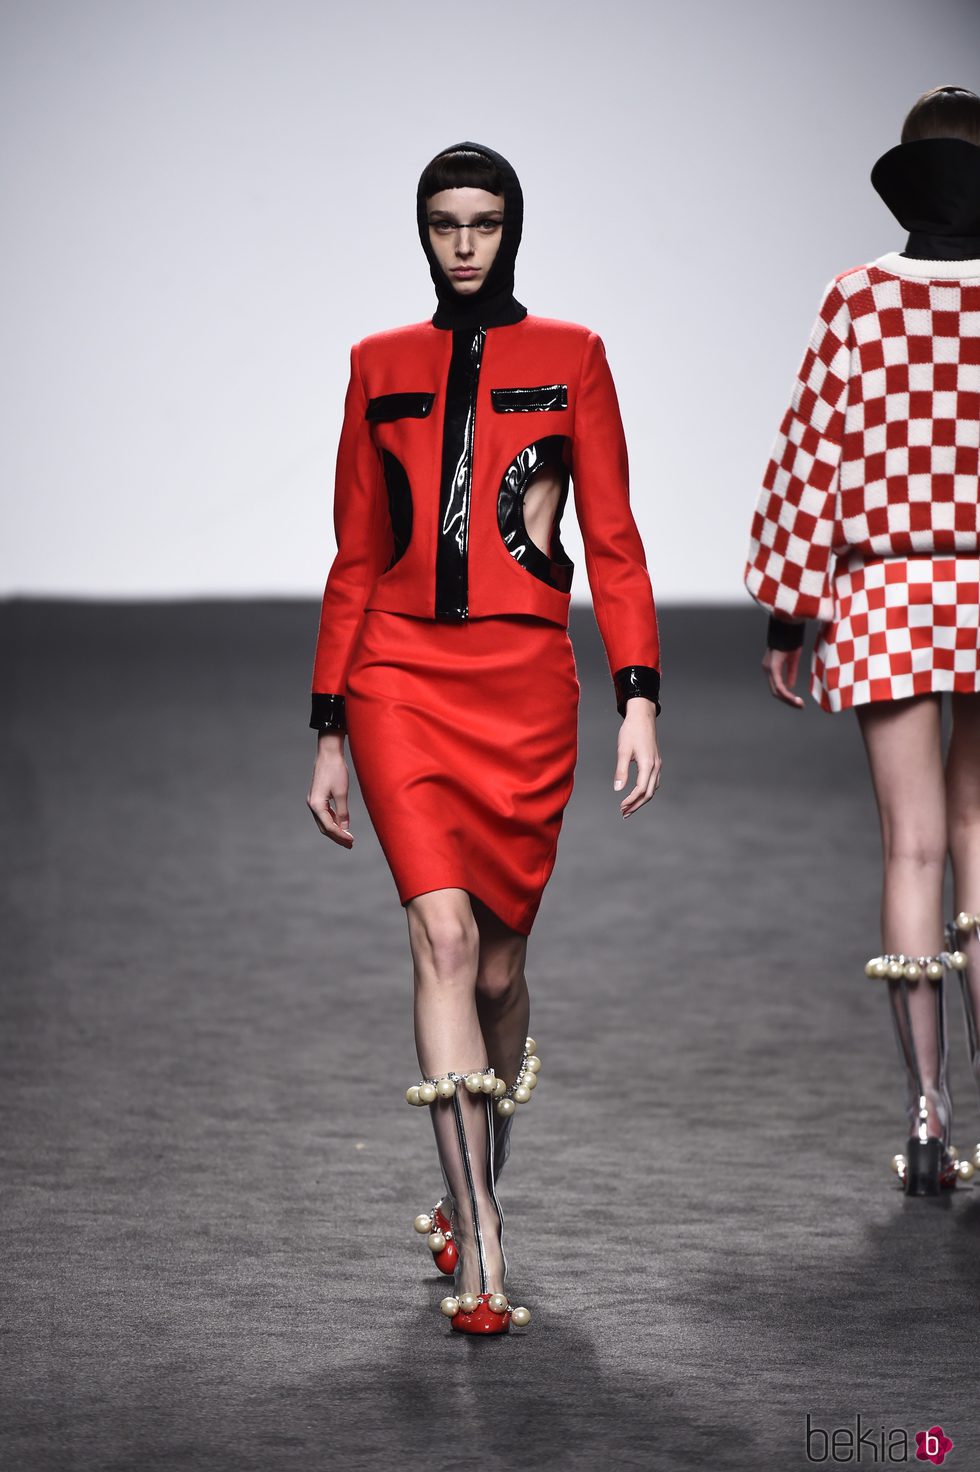 Chaqueta y falda roja de María Escote de la campaña otoño/invierno 2018/2019 en la Madrid Fashion Week